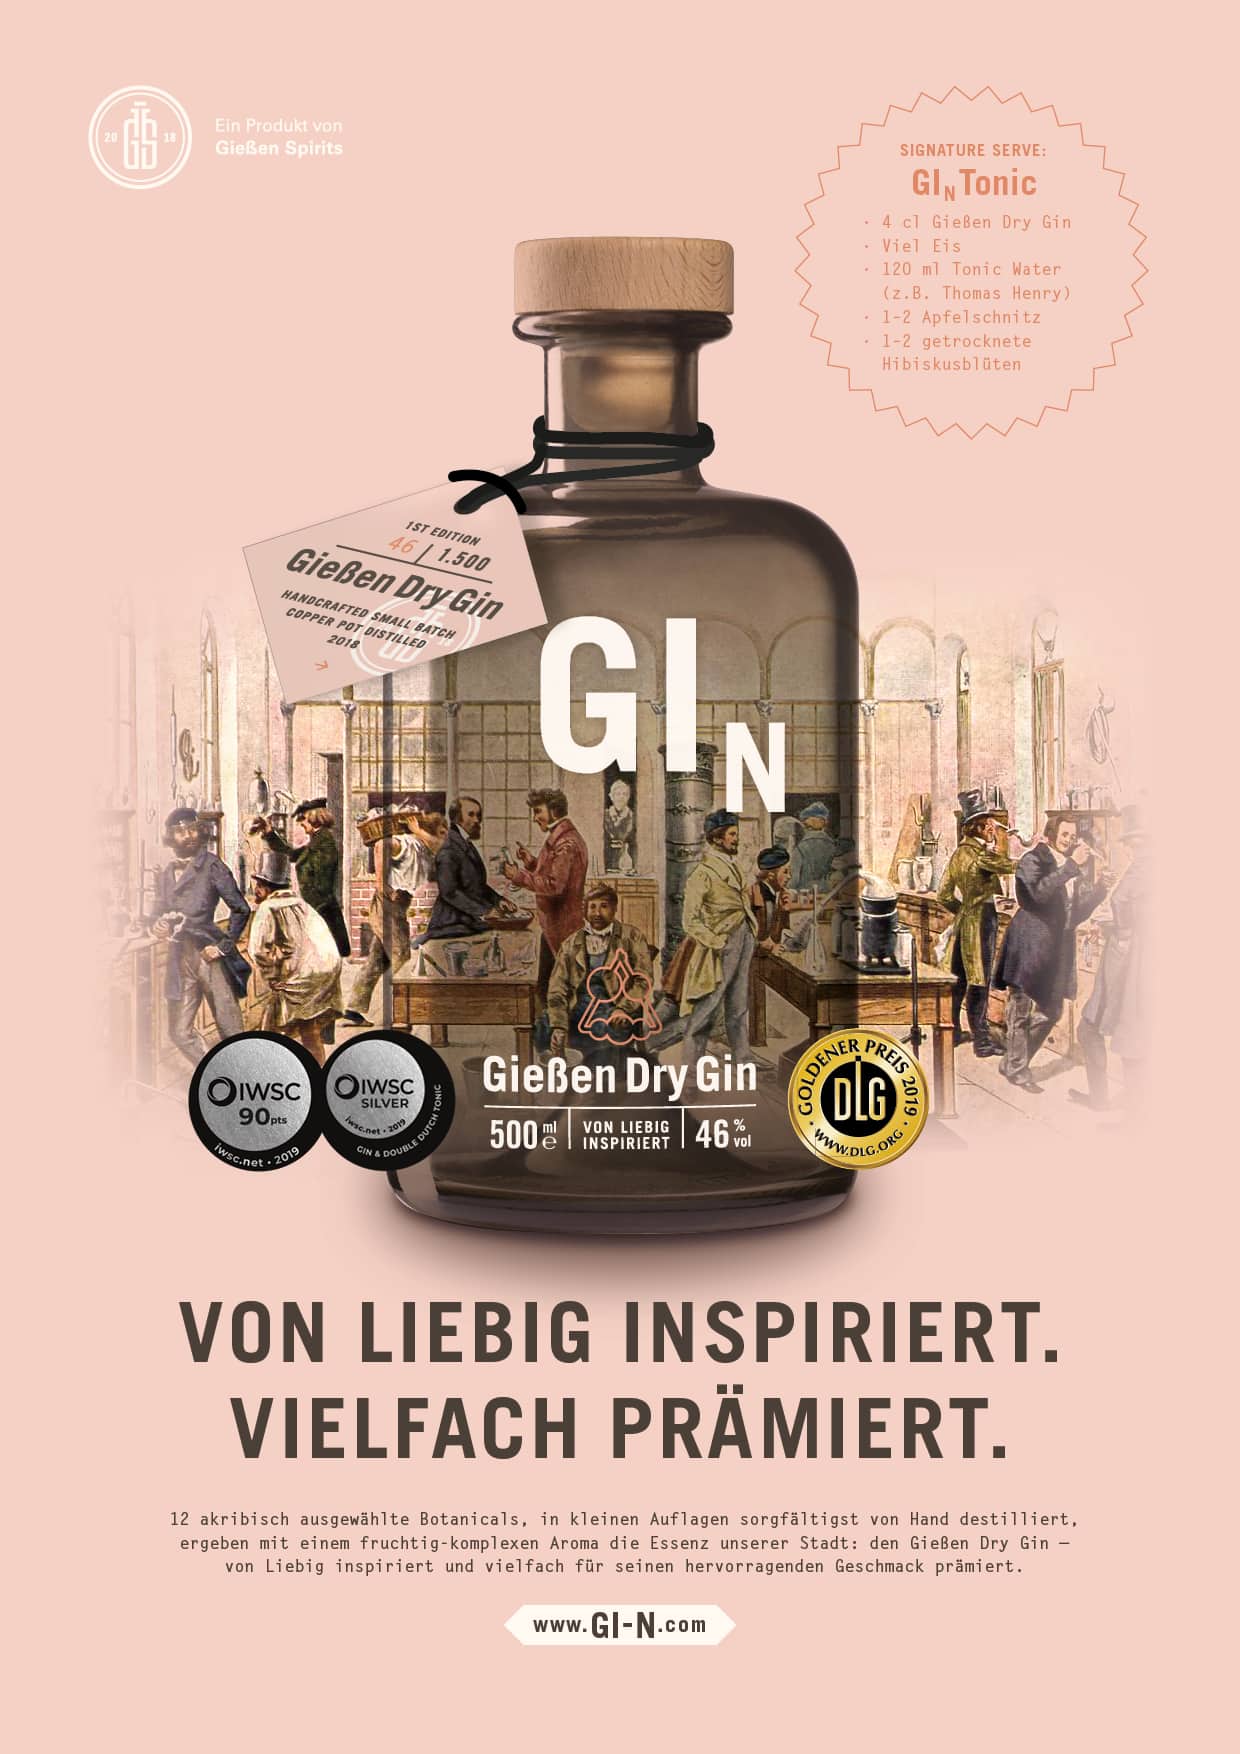 Dry Gin von Gießen Dry Gin